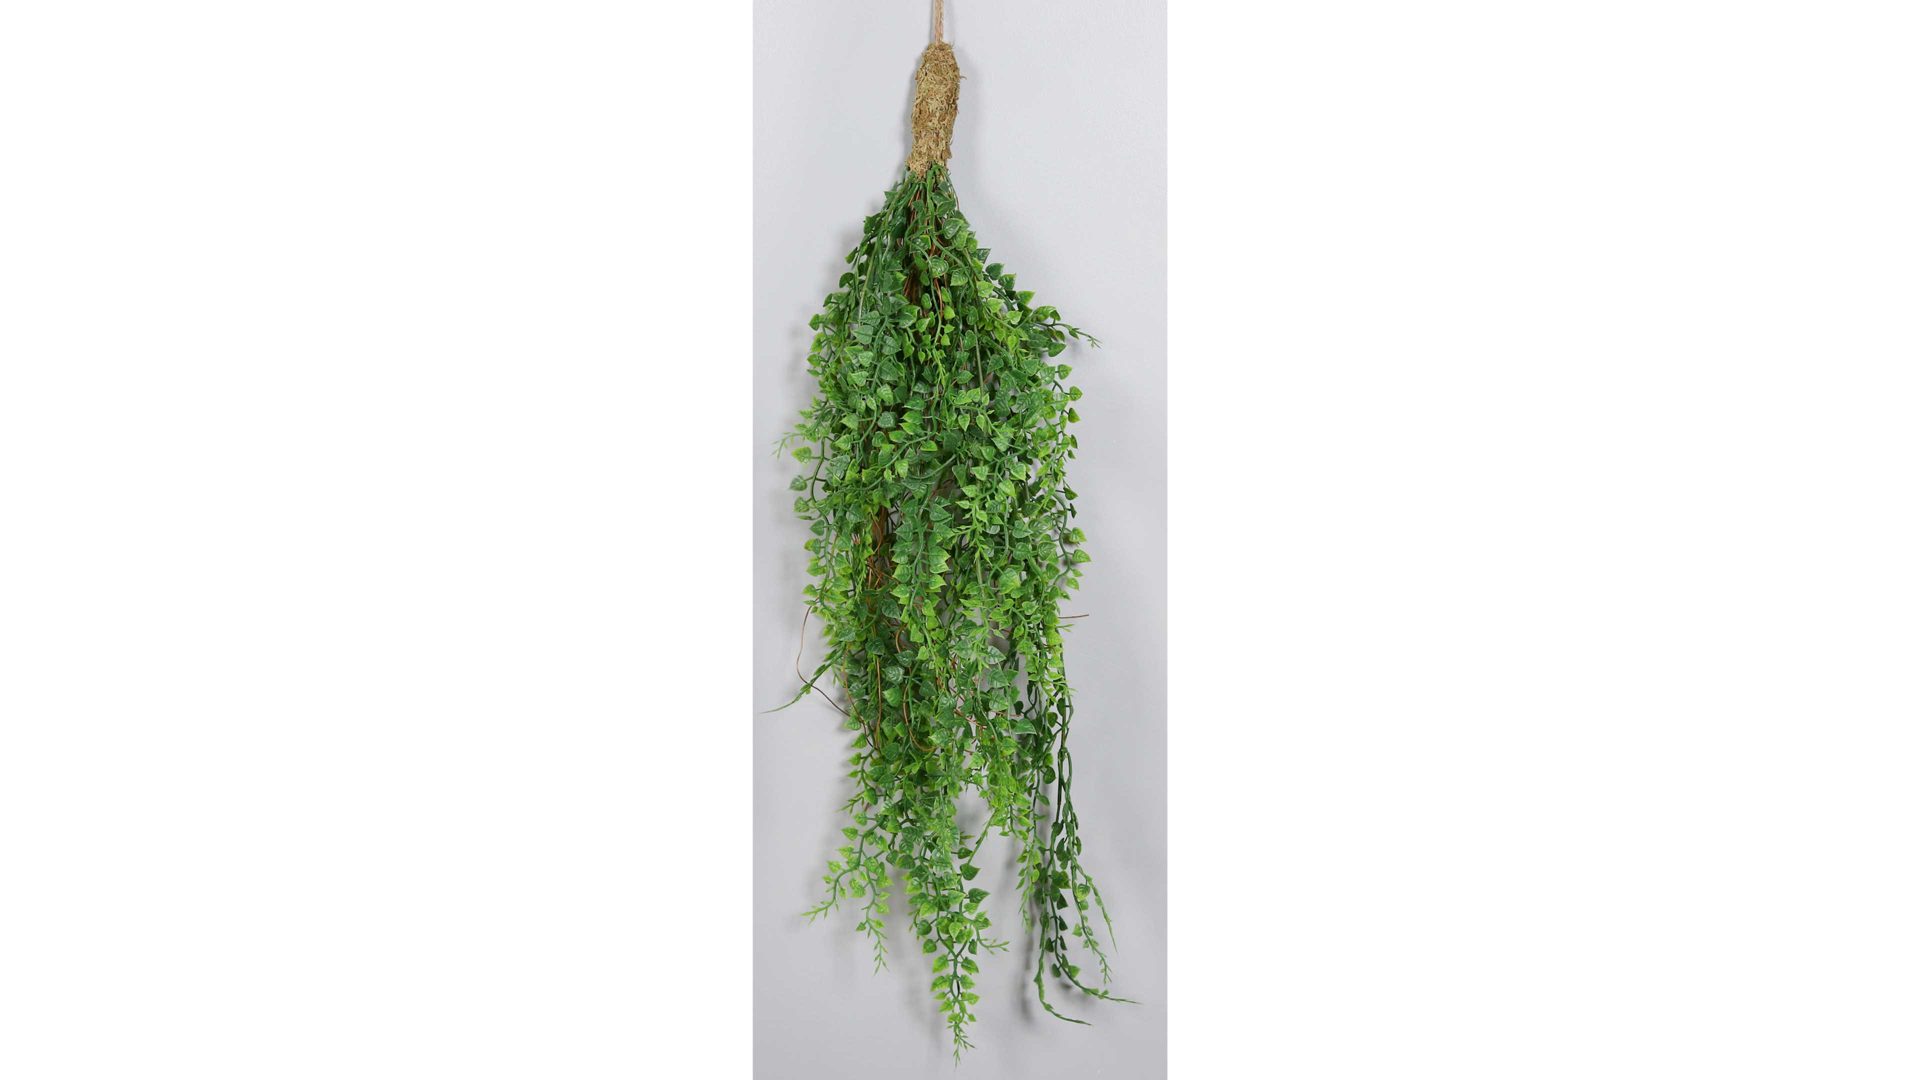 Zweig Dpi aus Kunststoff in Grün hängendes Grünbündel Knopffarn - Länge ca. 50 cm